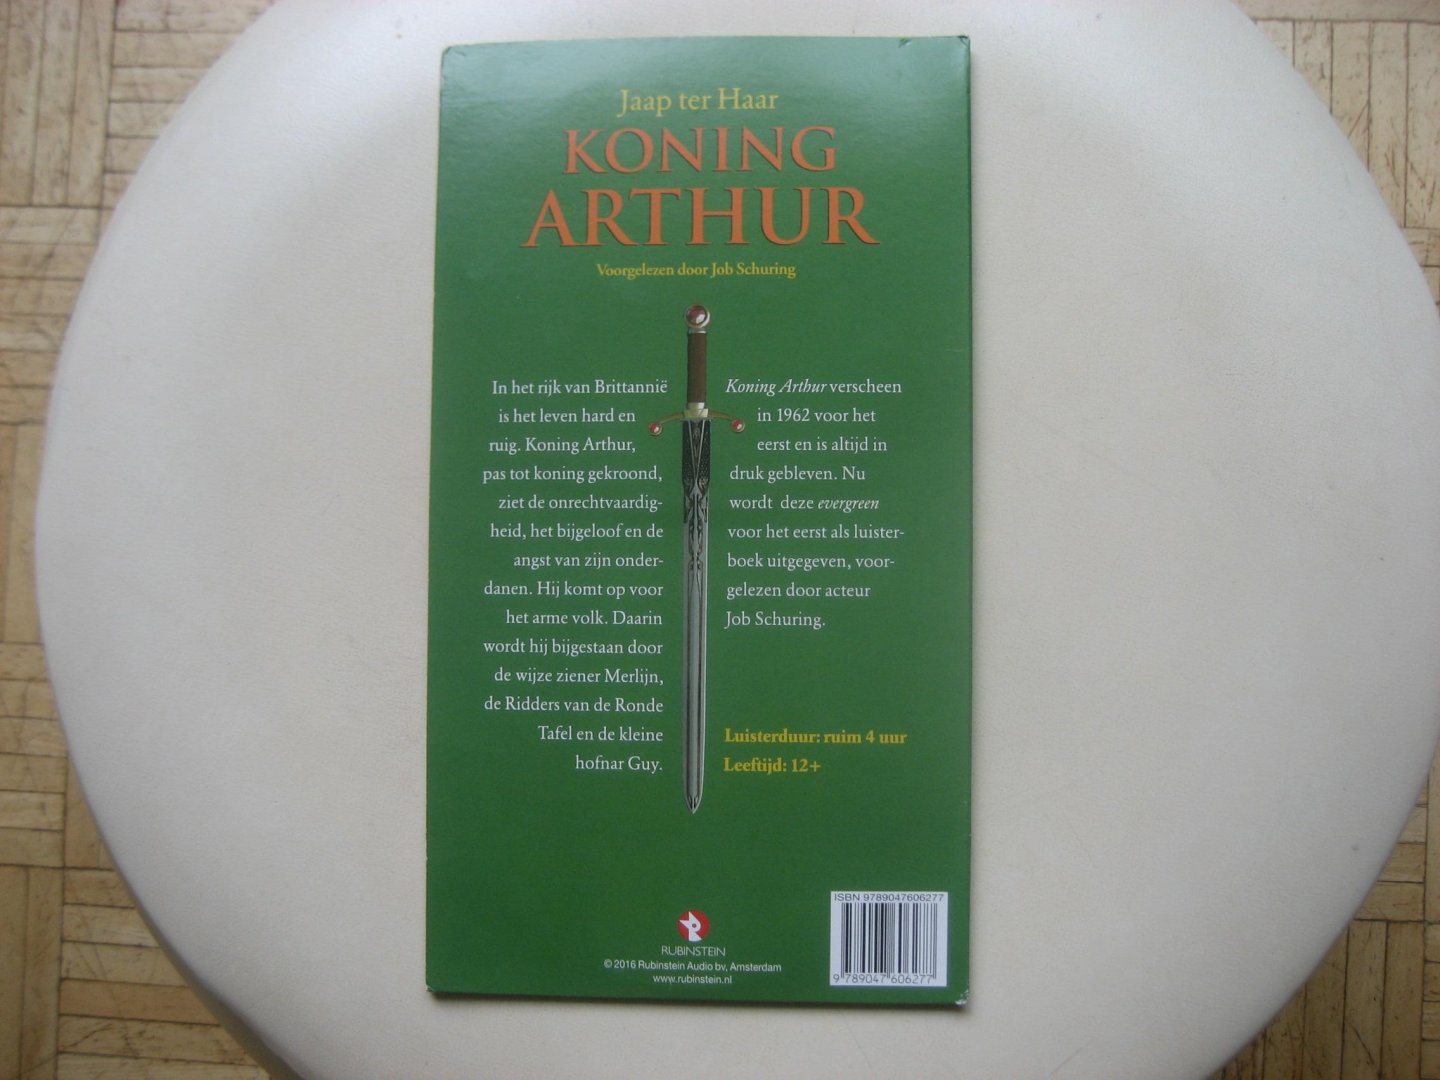 Jaap ter Haar - Koning Arthur  / 4 CD luisterboek voorgelezen door Job Schuring